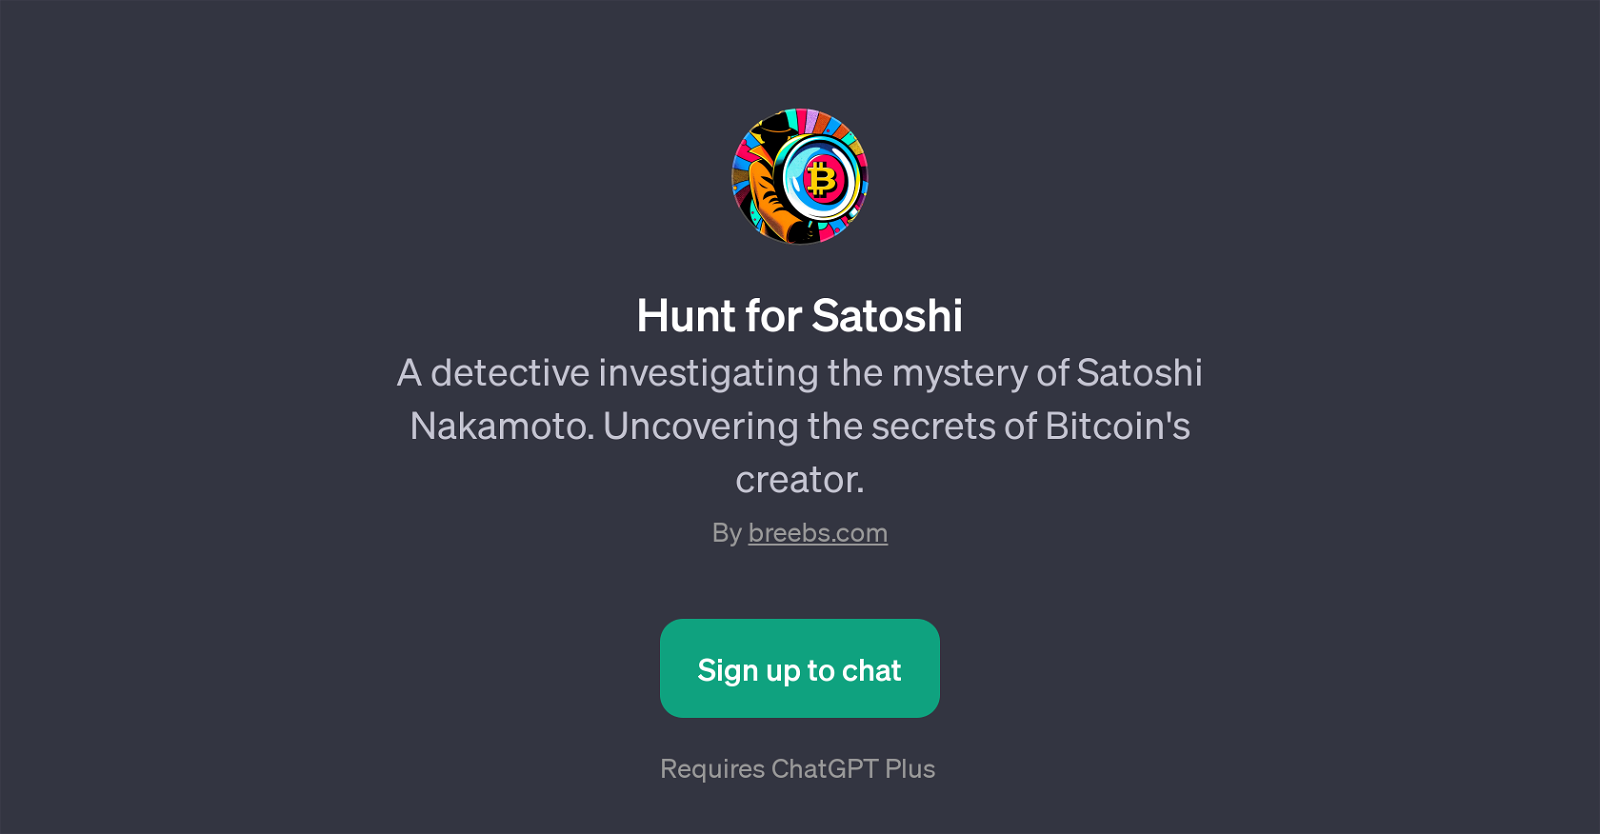 Hunt for Satoshi website